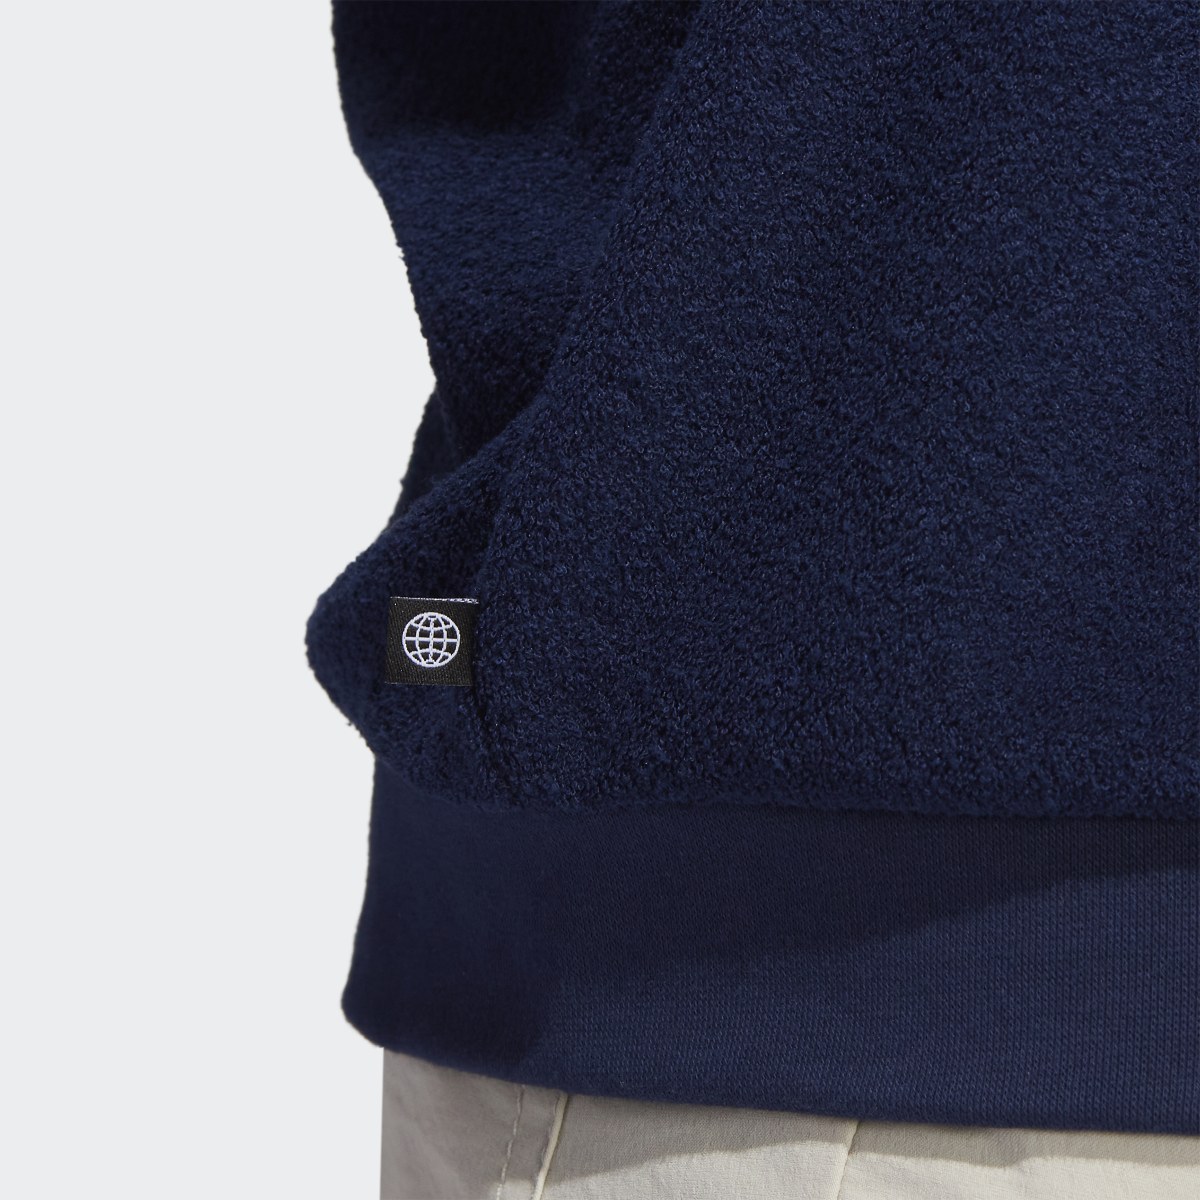 Adidas Core Sweatshirt. 7